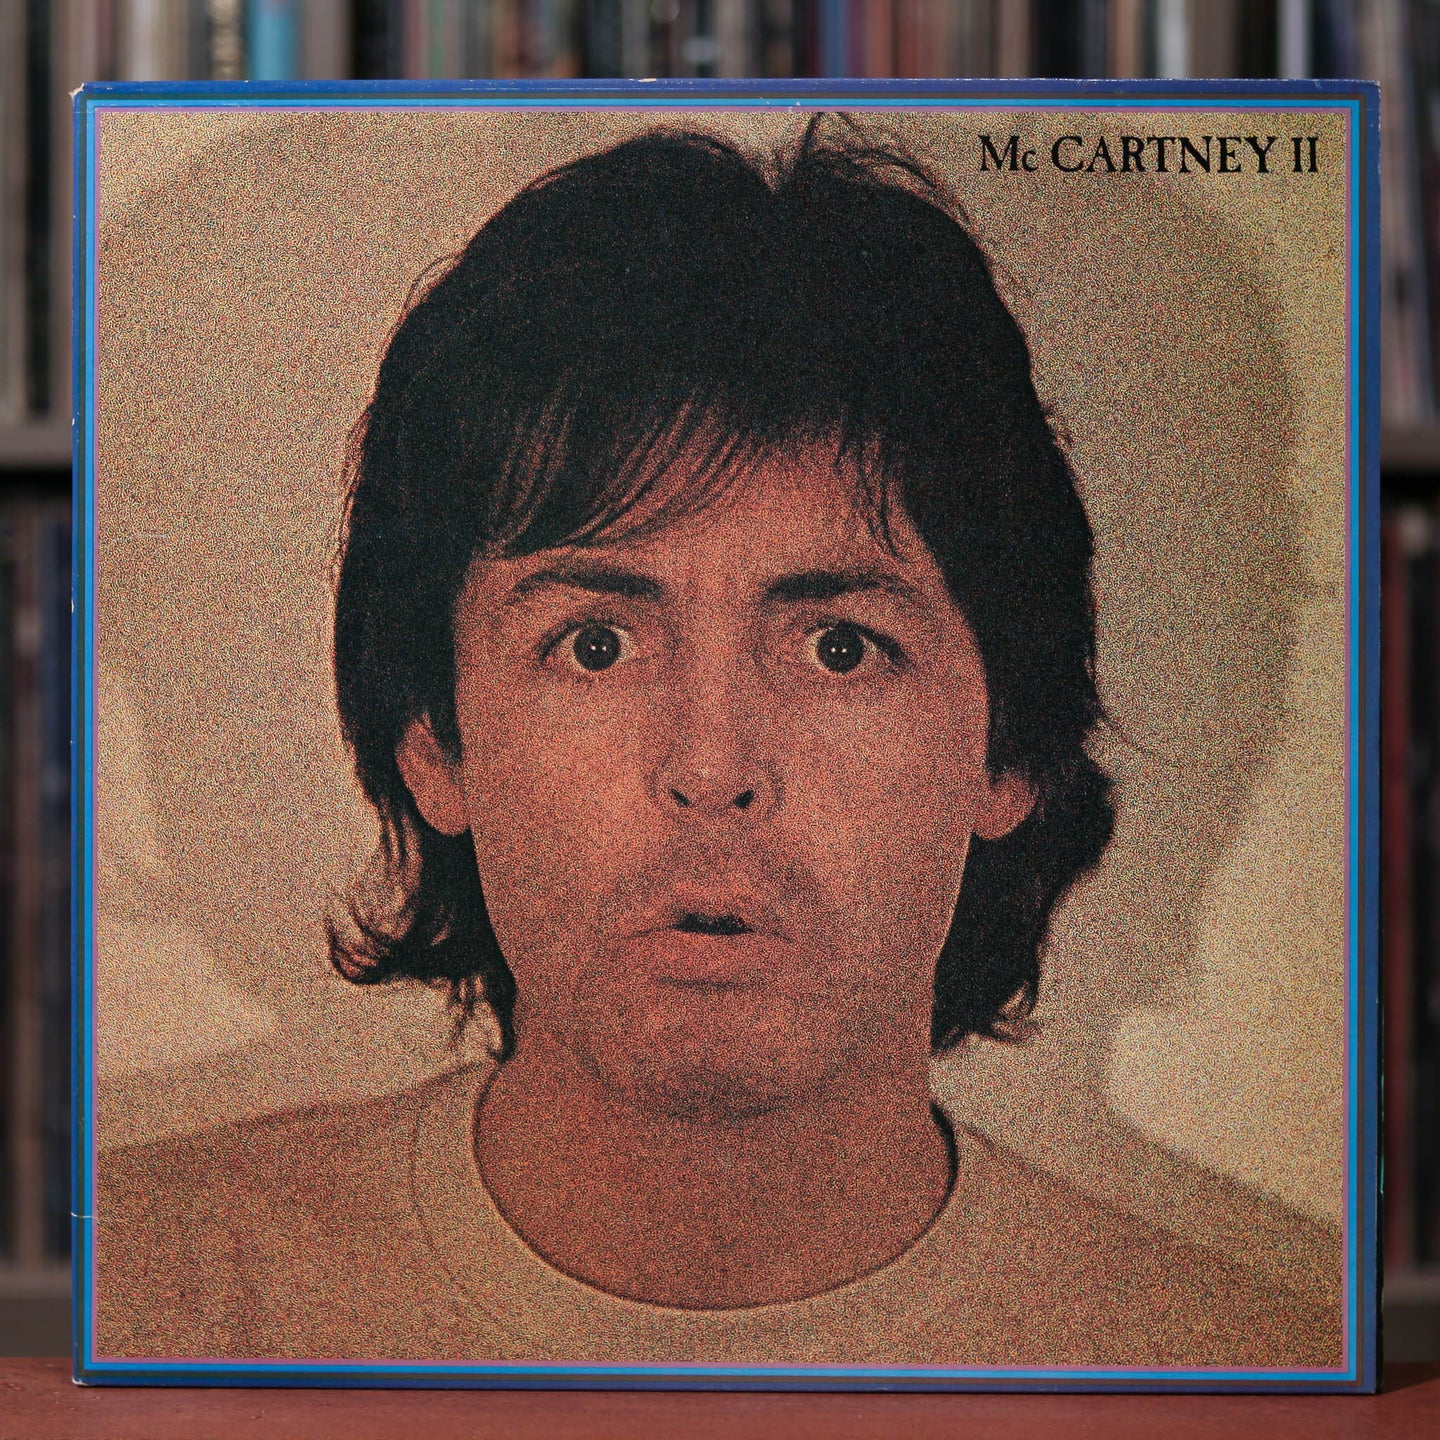 Paul McCartney - McCartney II - 1980 Columbia, VG/VG+